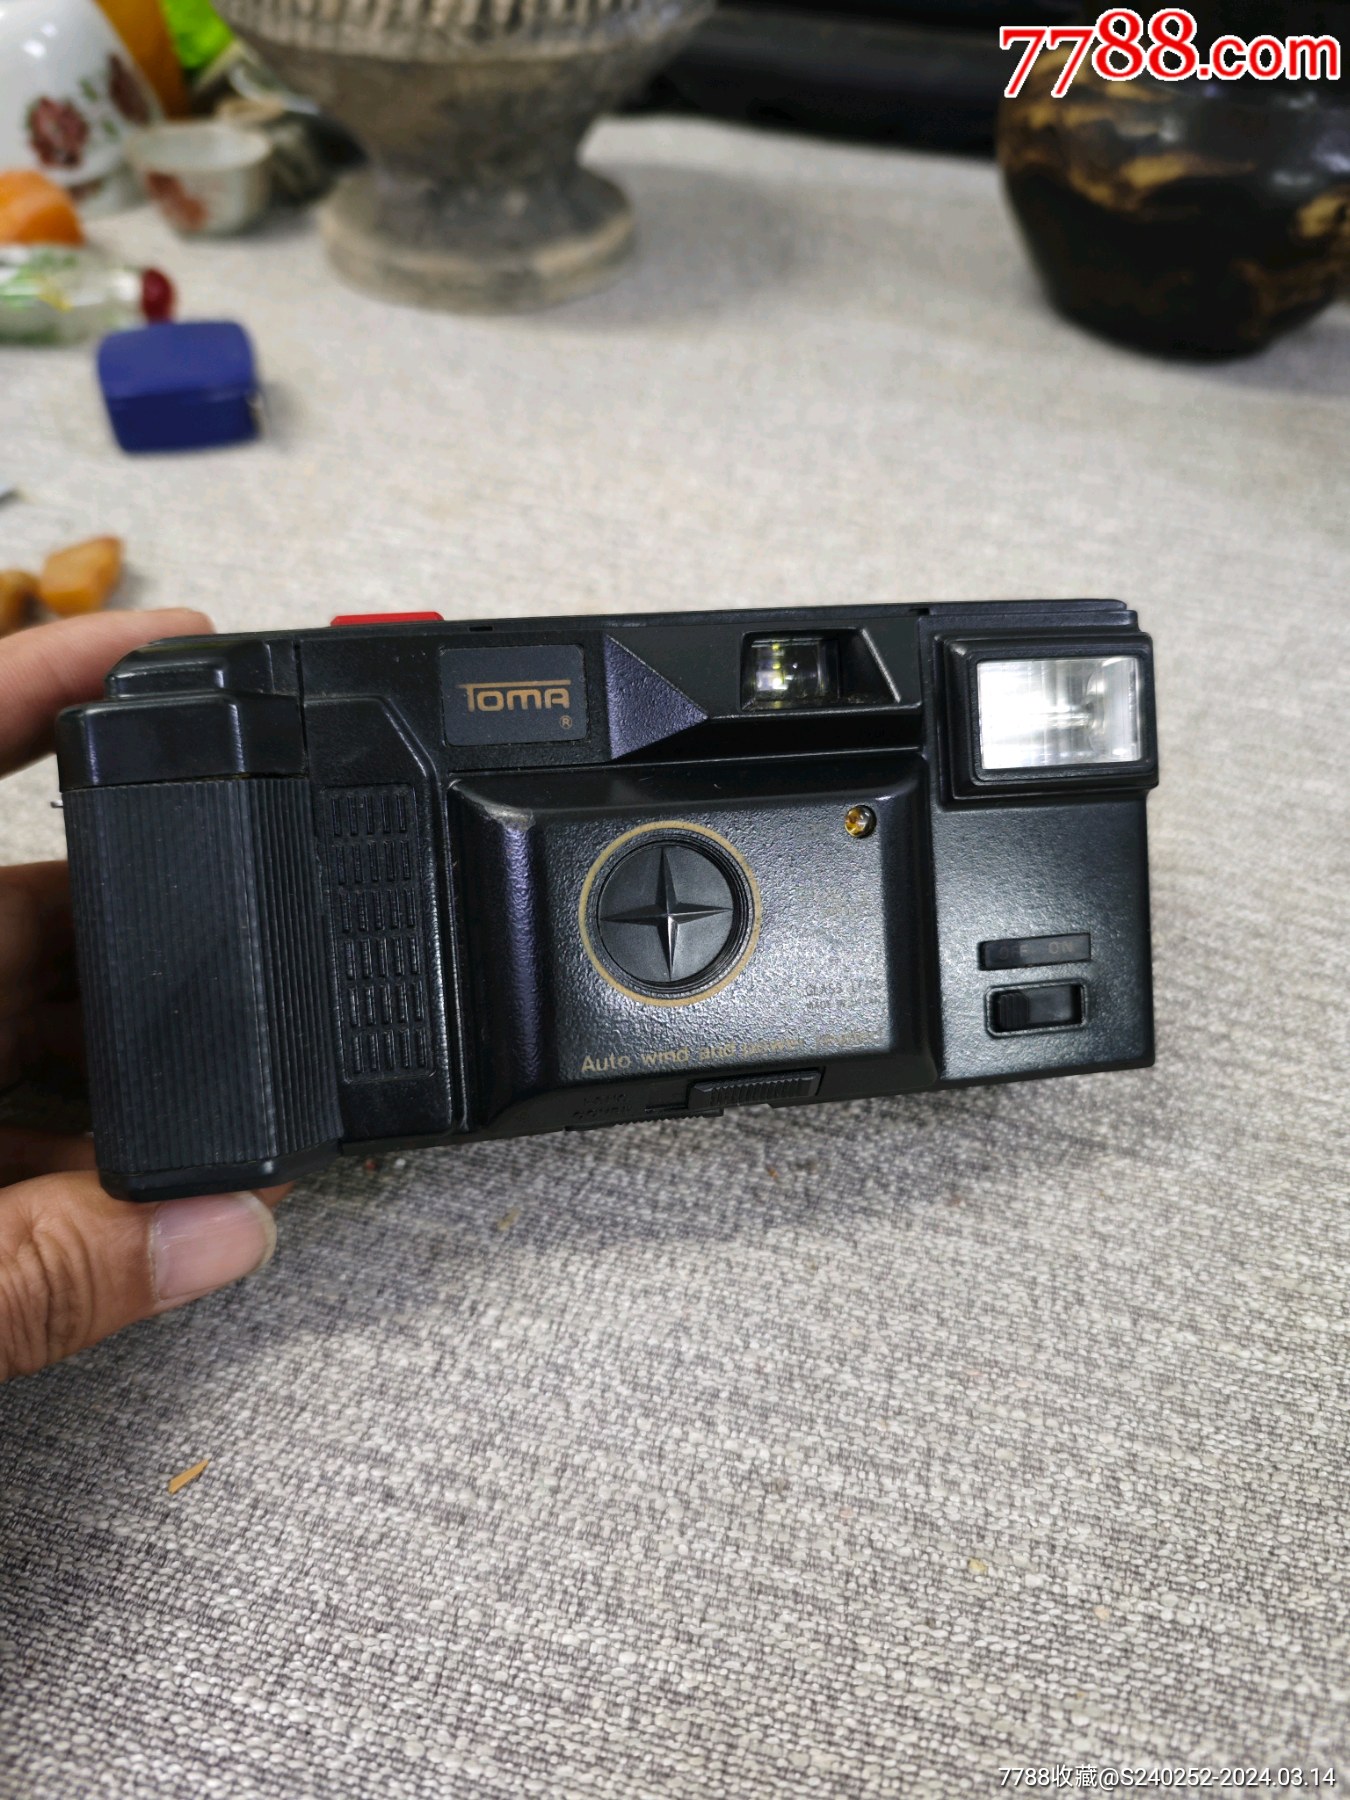 托马胶卷相机